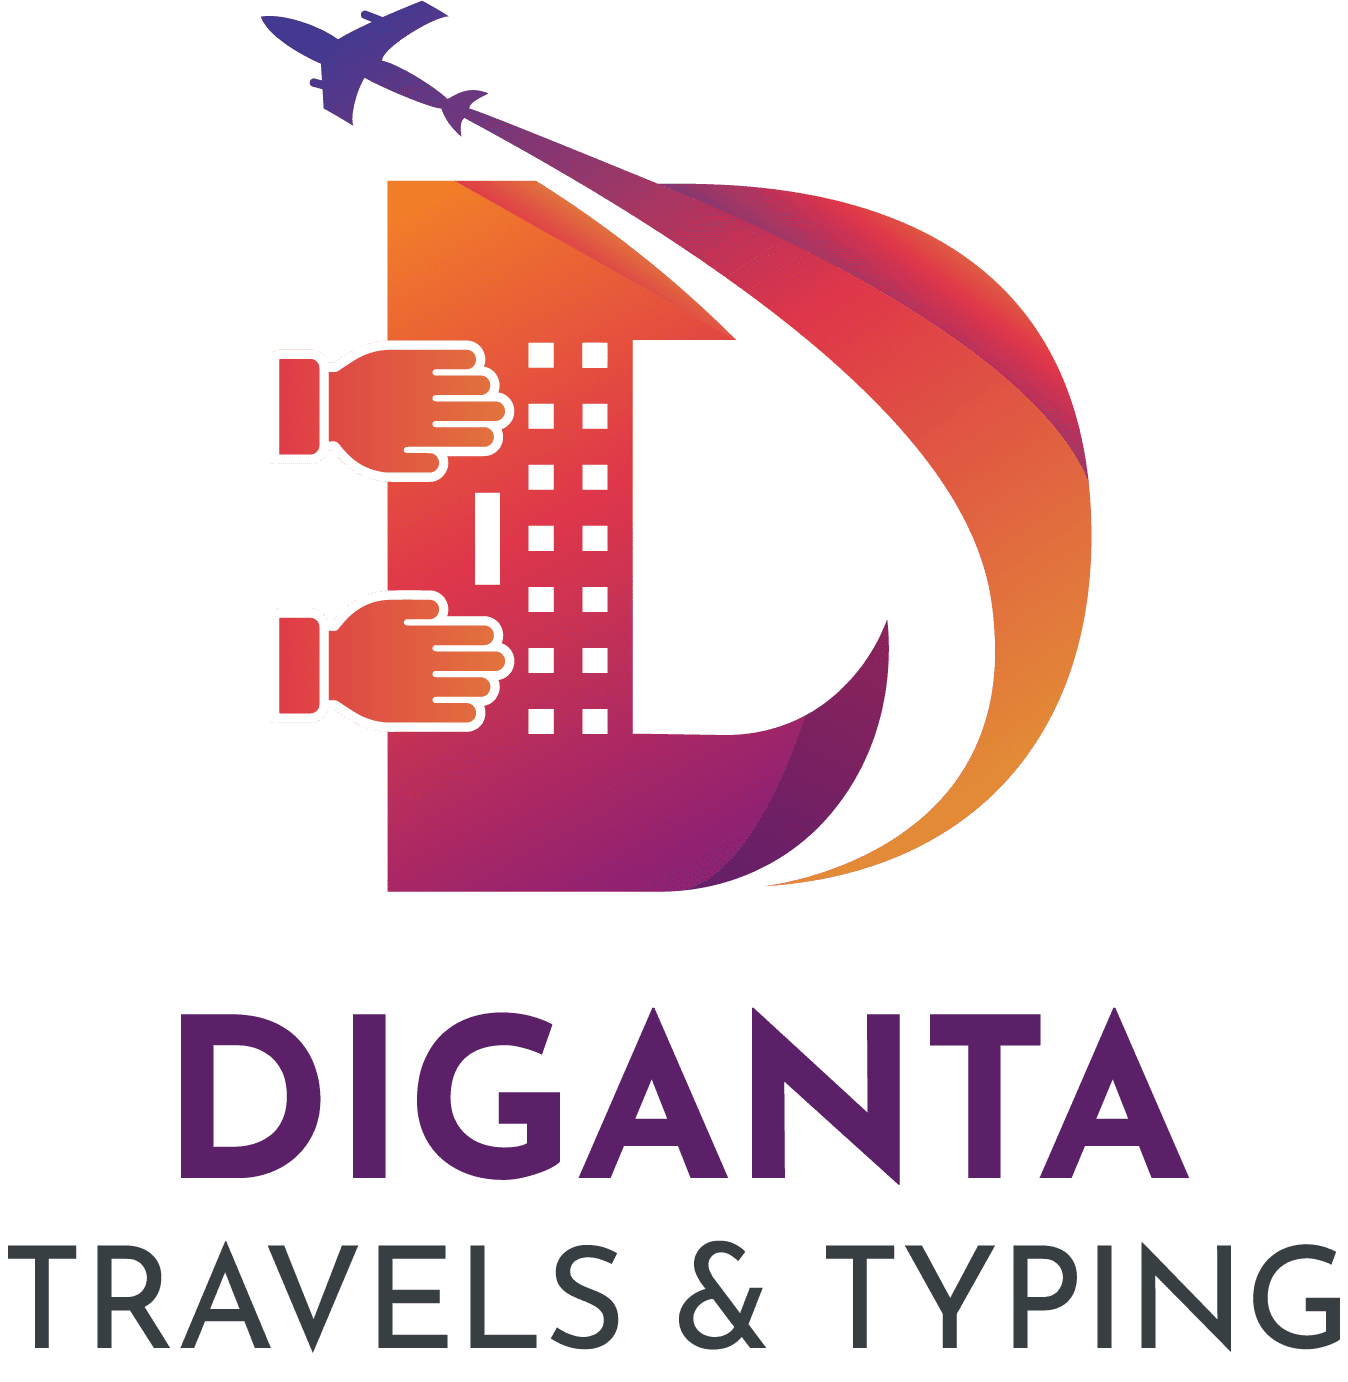 Diganta Travels & Typing